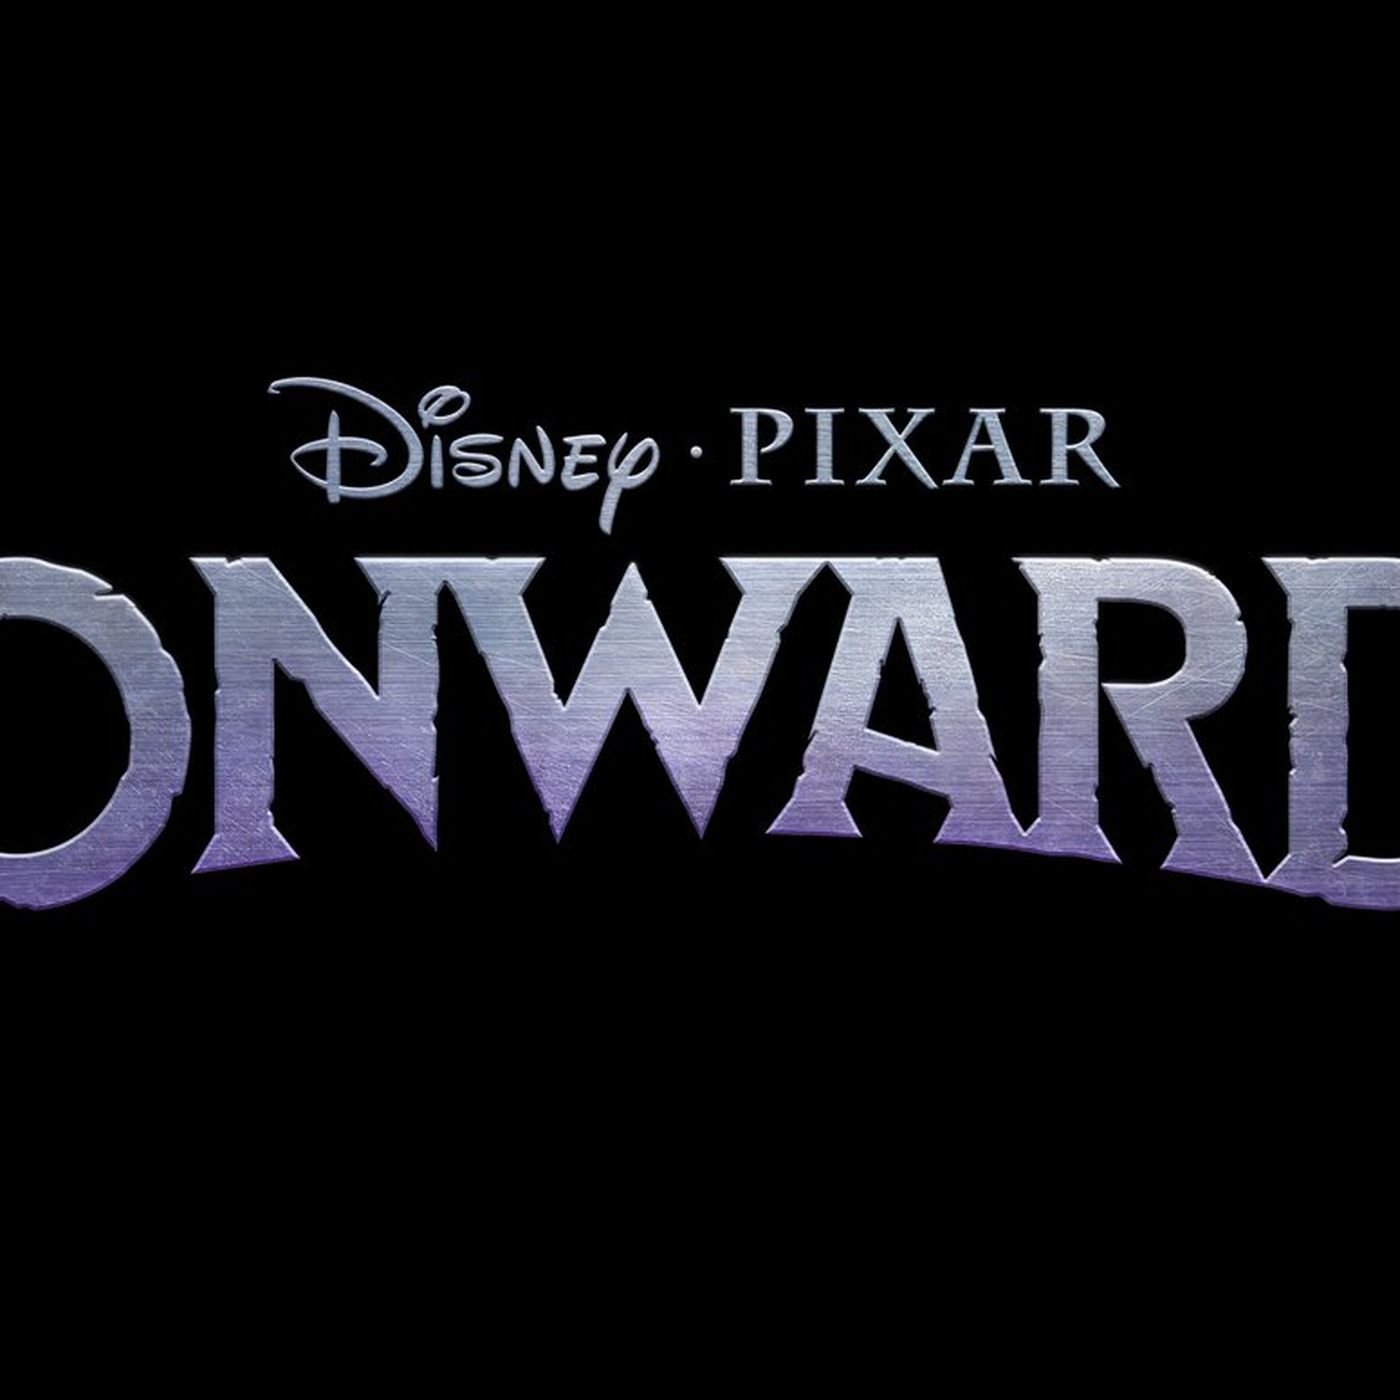 Pixar's new original movie is titled Onward